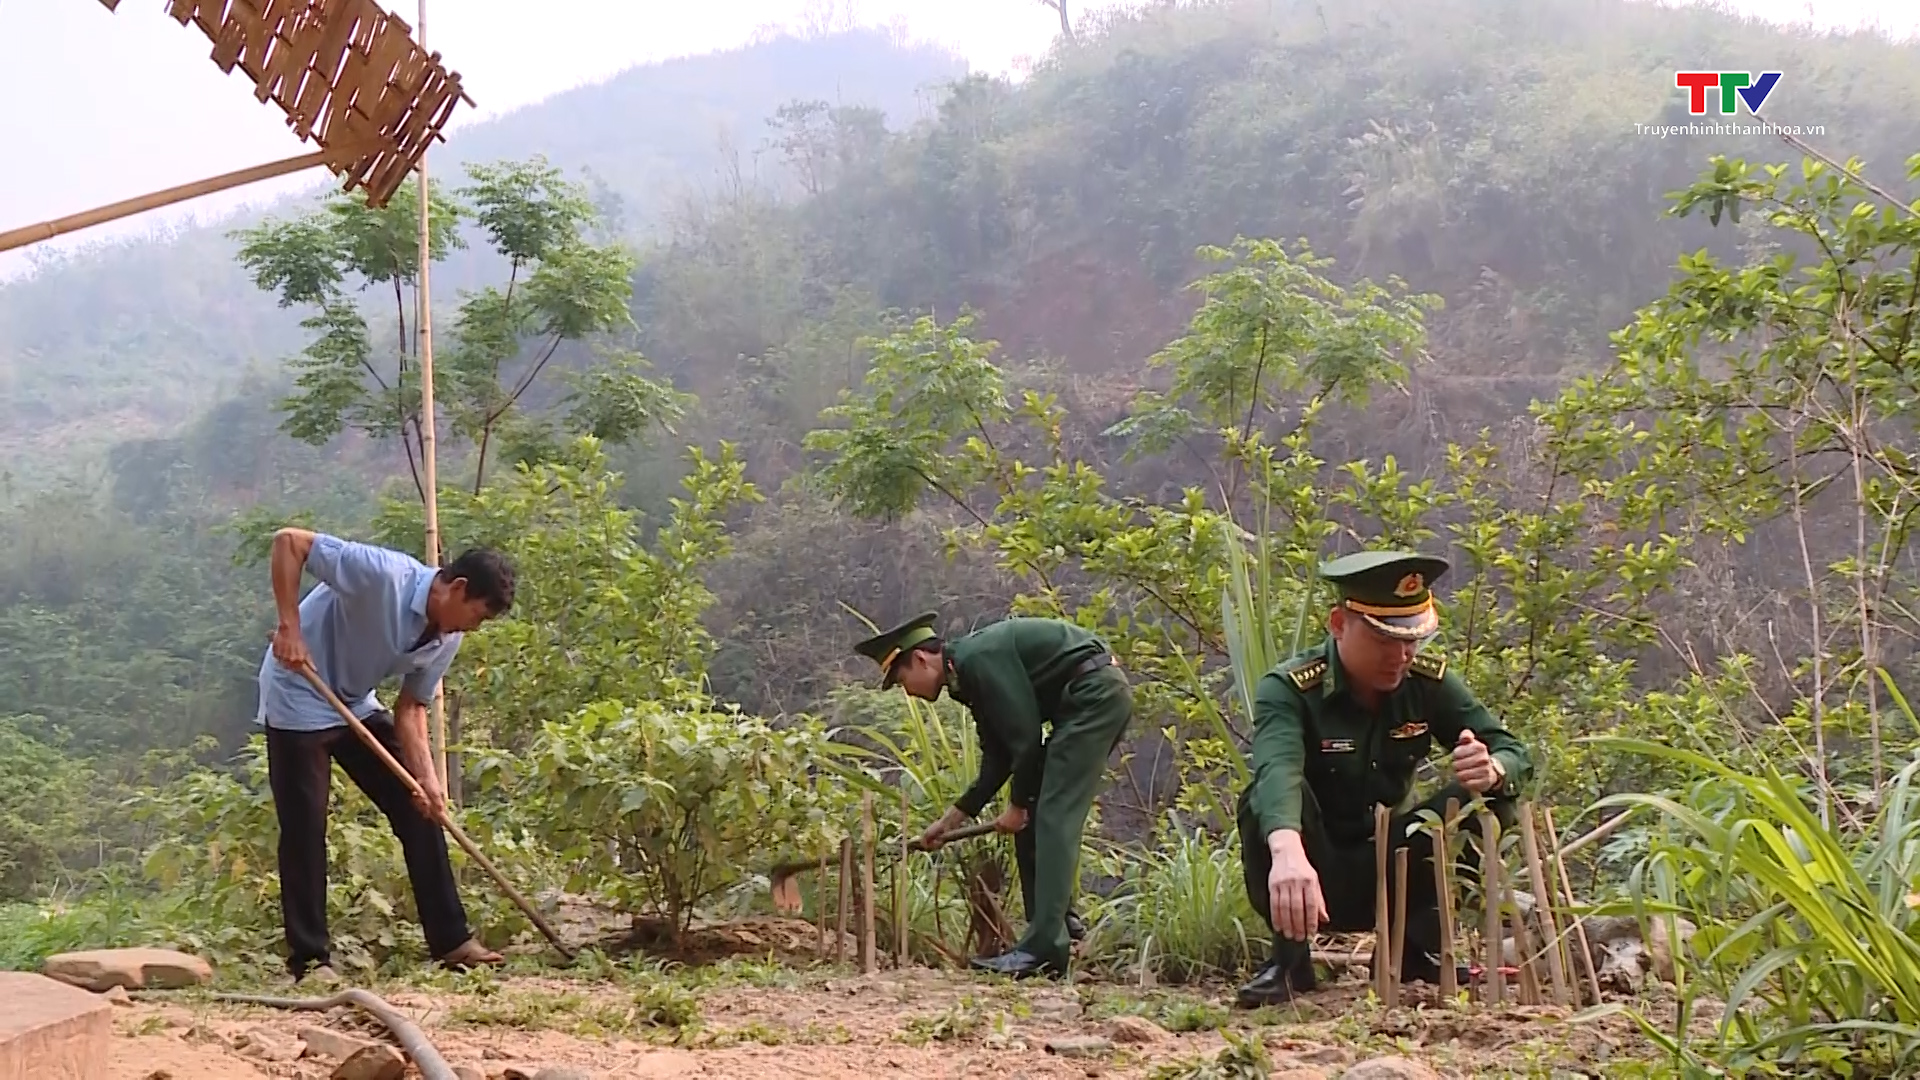 Bộ đội Biên phòng Thanh Hoá sát cánh cùng các địa phương xây dựng nông thôn mới - Ảnh 4.